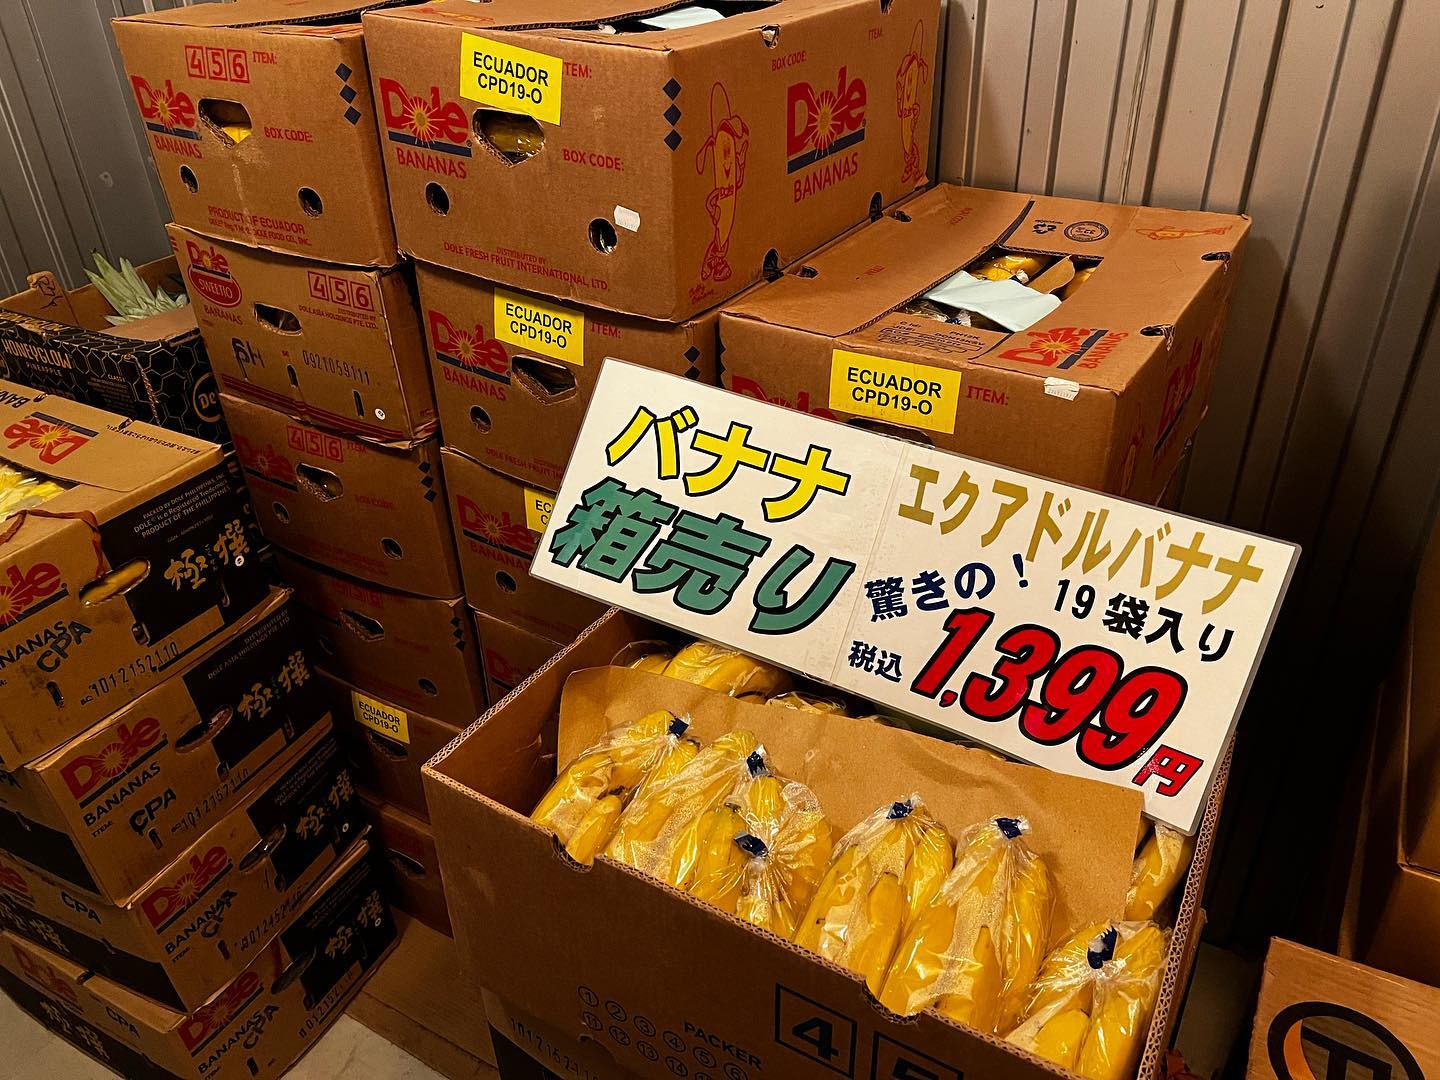 恒例の！
バナナの箱売り〜️
エクアドル産バナナ
19袋入り税込¥1,399
お買い上げのたび倉庫からお出しします